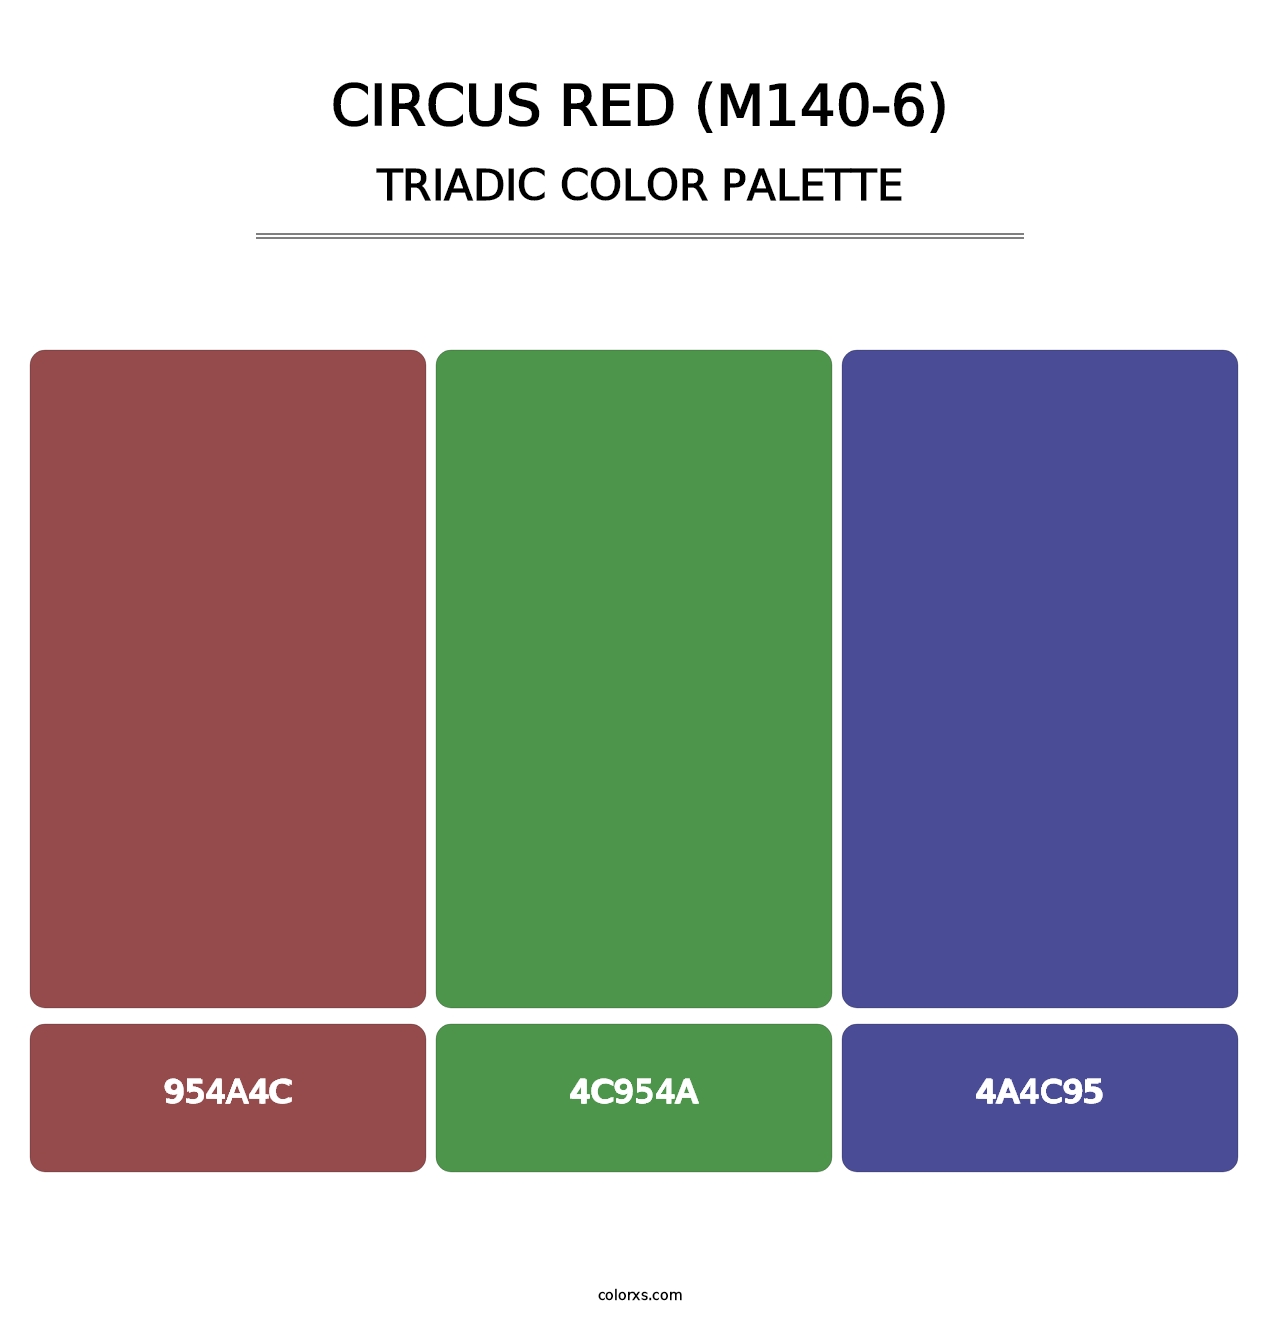 Circus Red (M140-6) - Triadic Color Palette